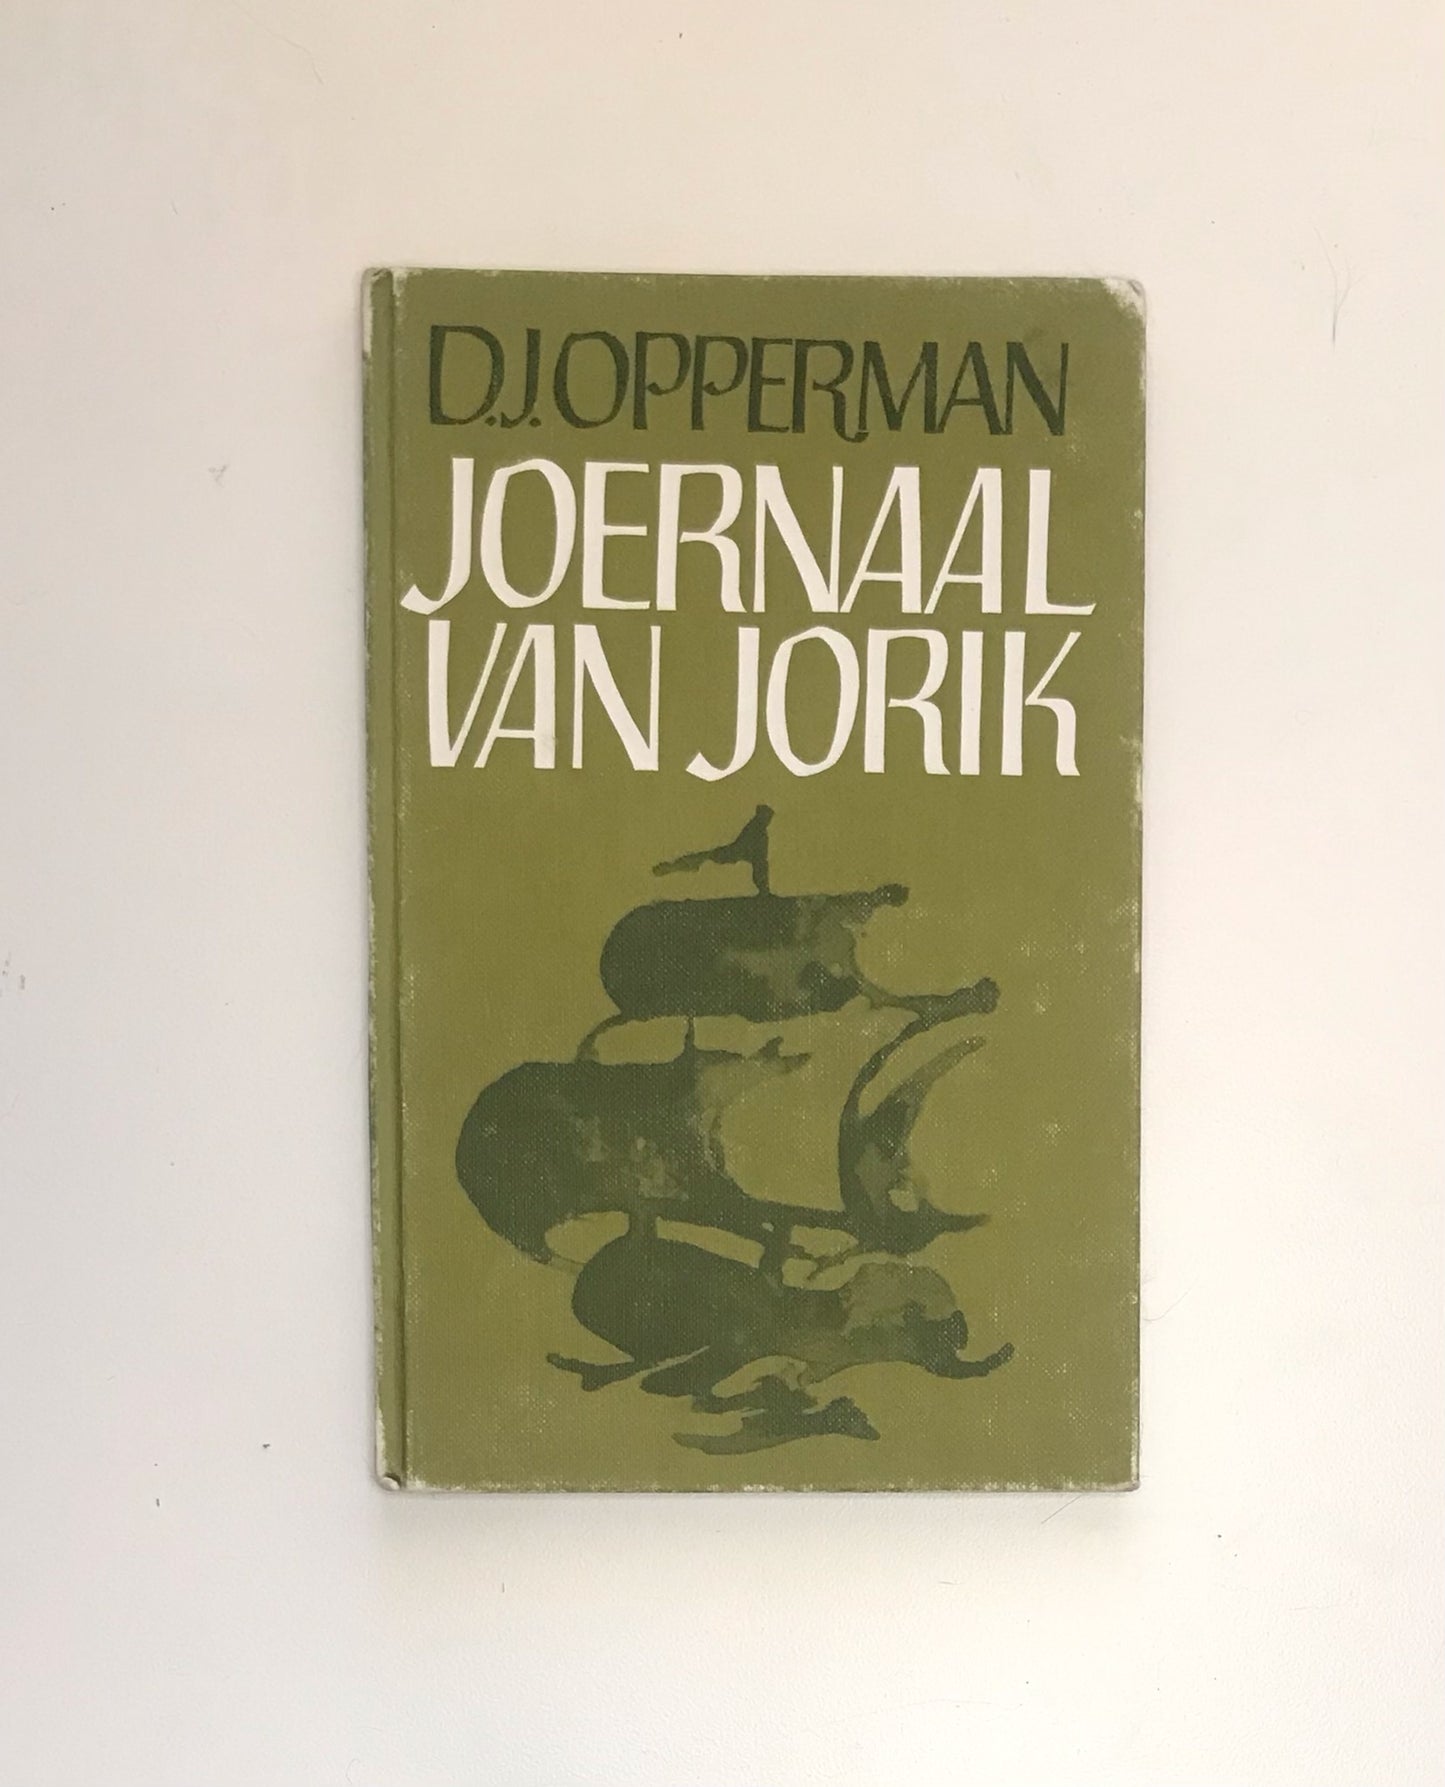 Joernaal van Jorik - D.J. Opperman